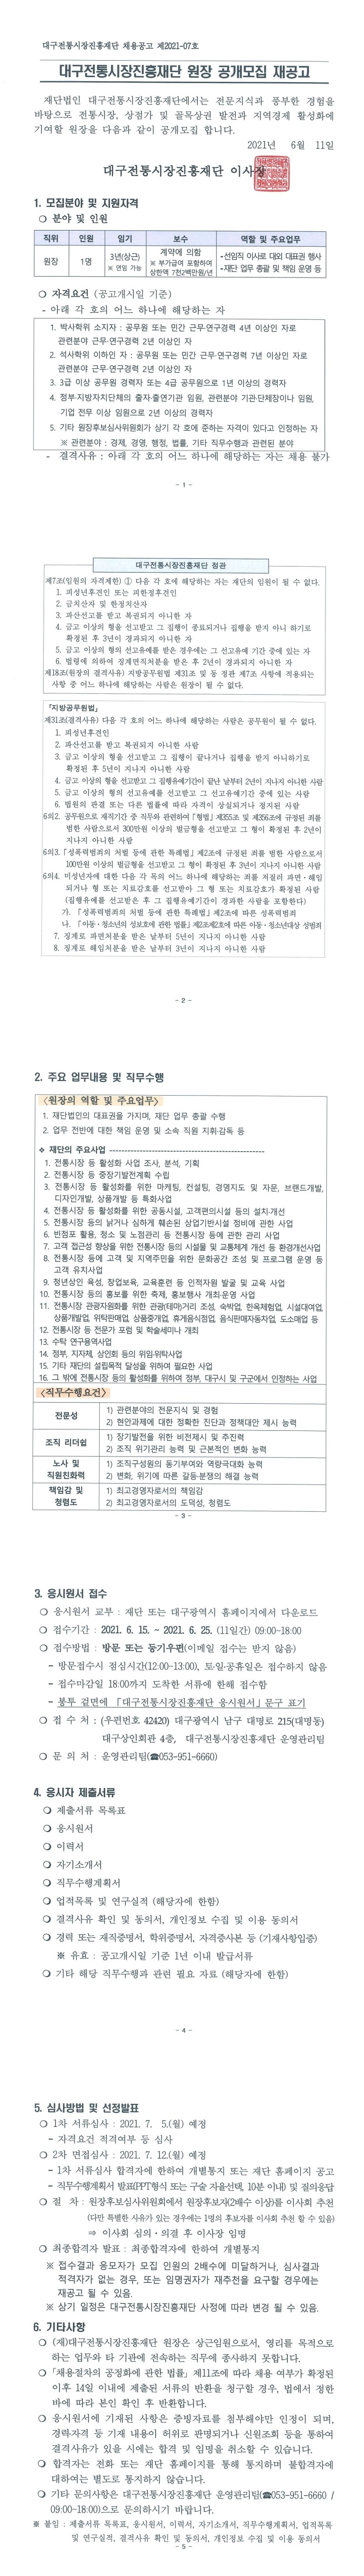 [대구전통시장진흥재단] 원장 공개모집 재공고('21.6.15 ~ 25)